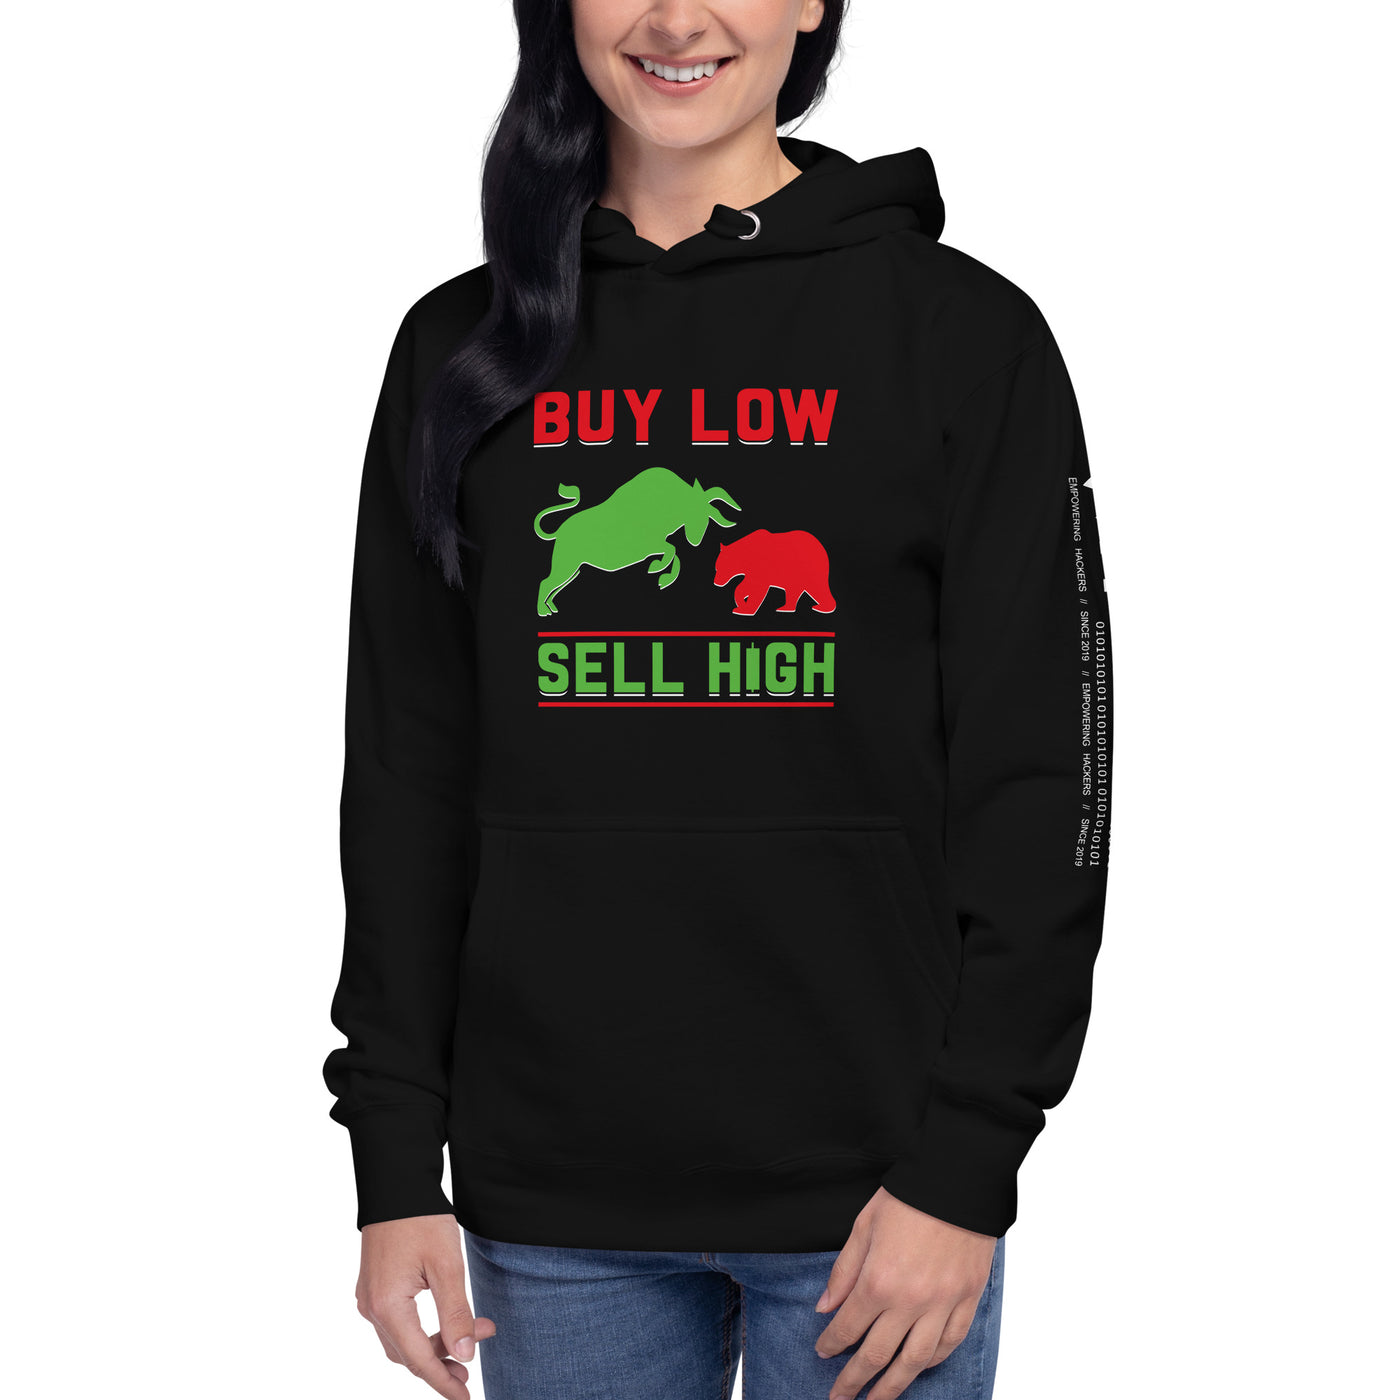 Buy low, Sell high - Unisex Hoodie